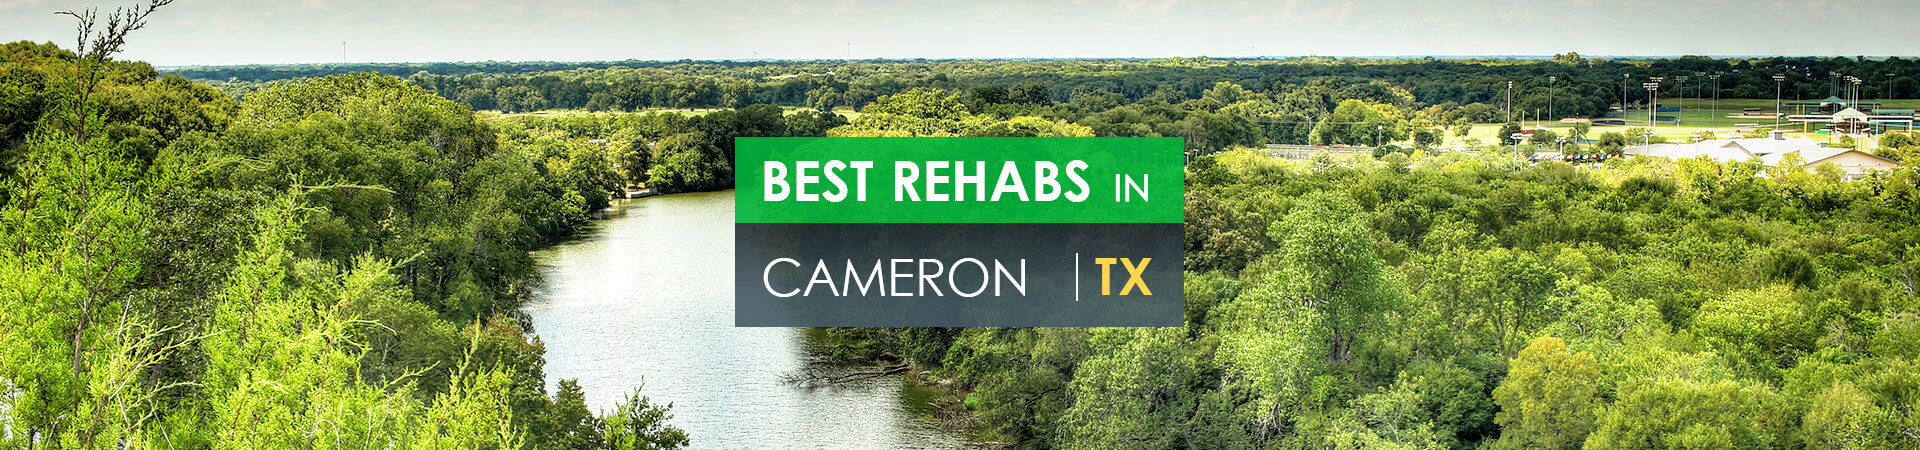 Best rehabs in Cameron, TX